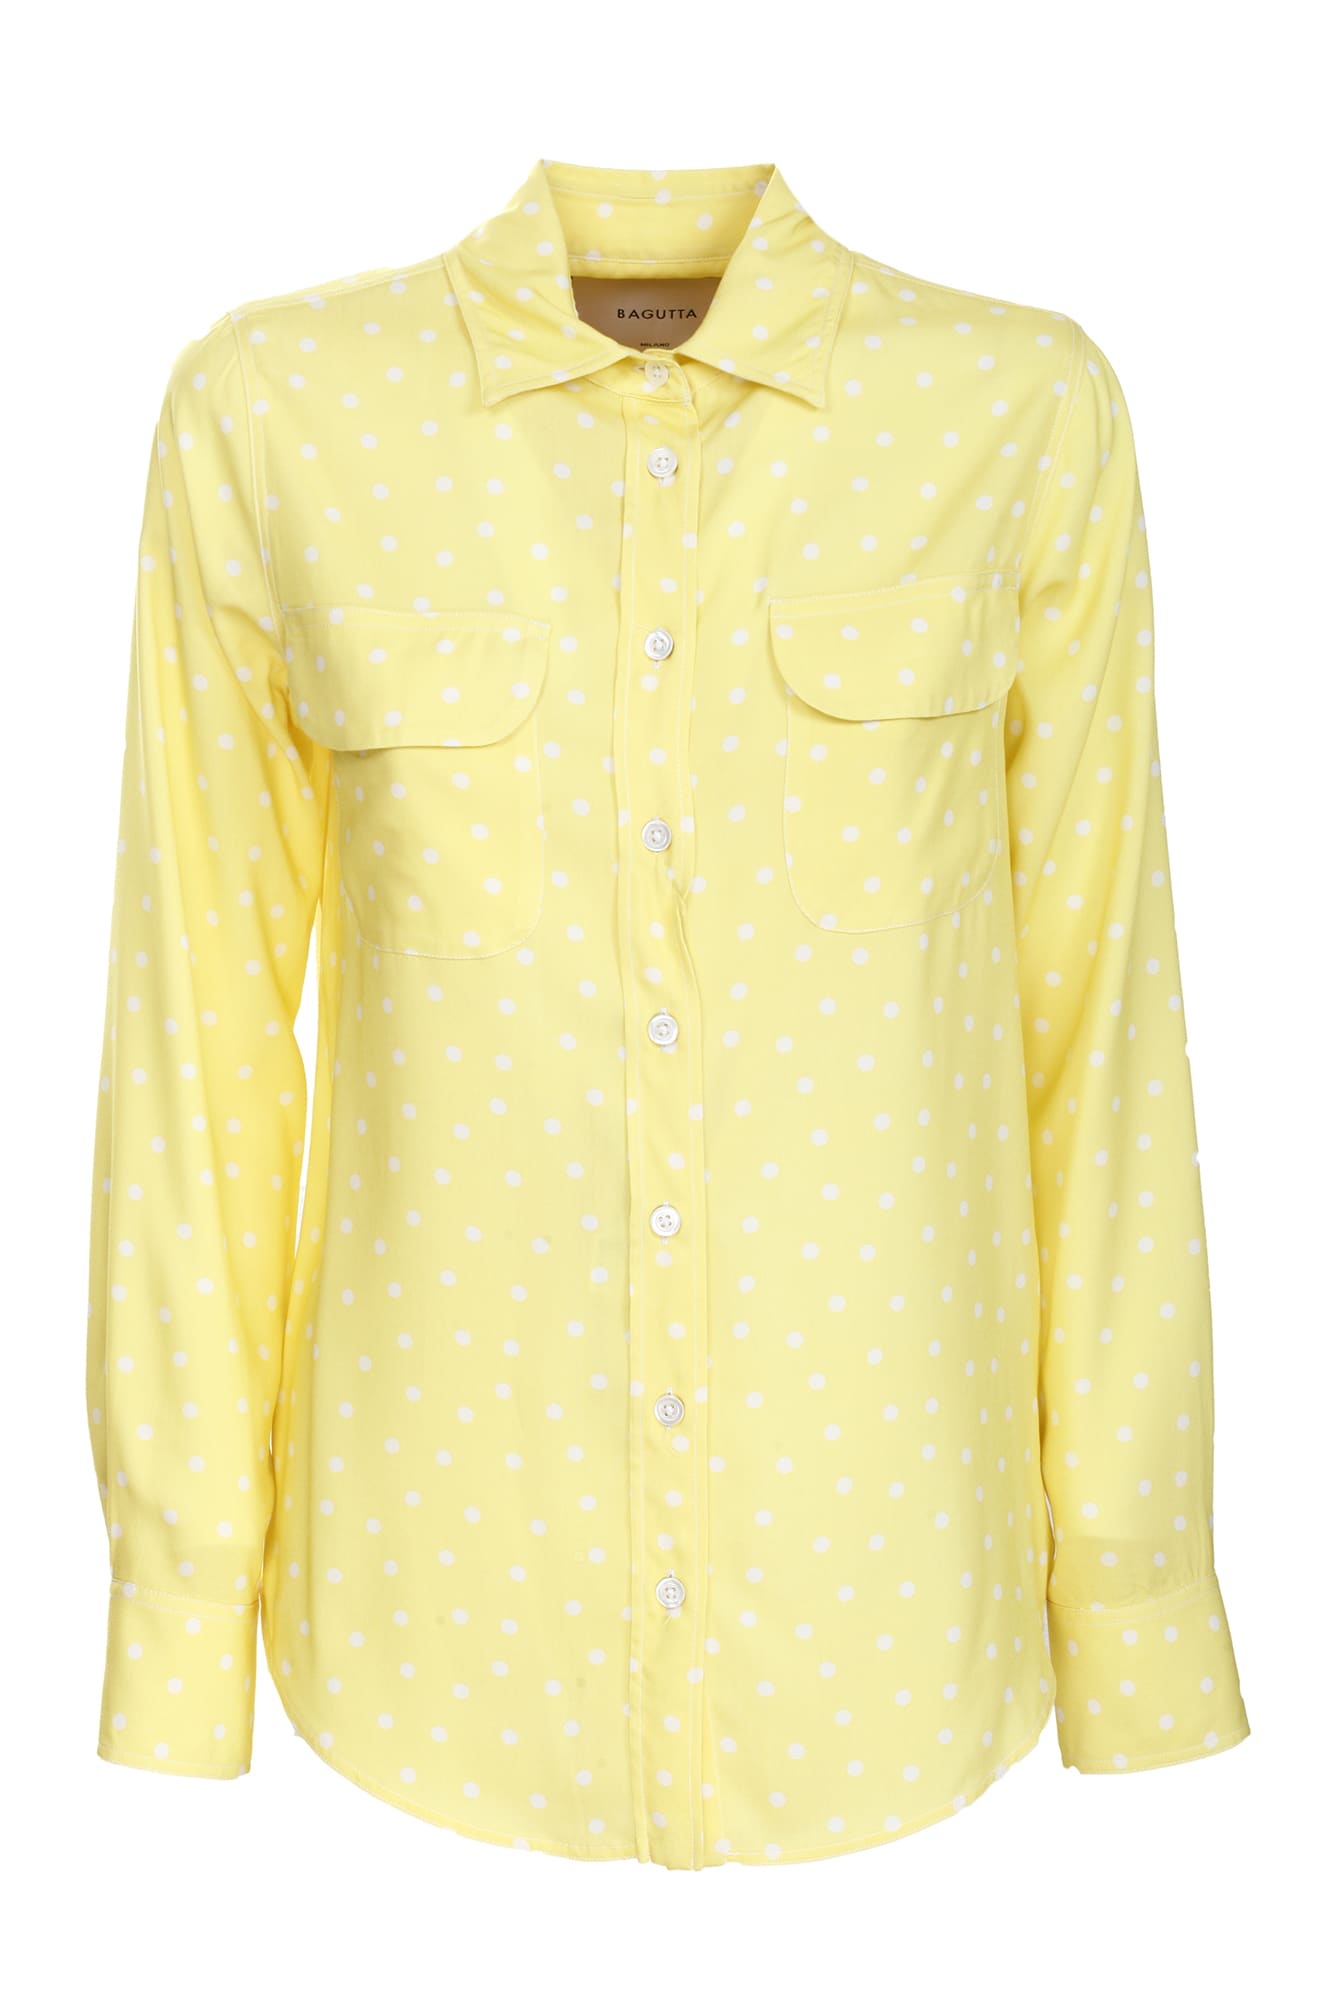 Bagutta yellow polka dot shirt